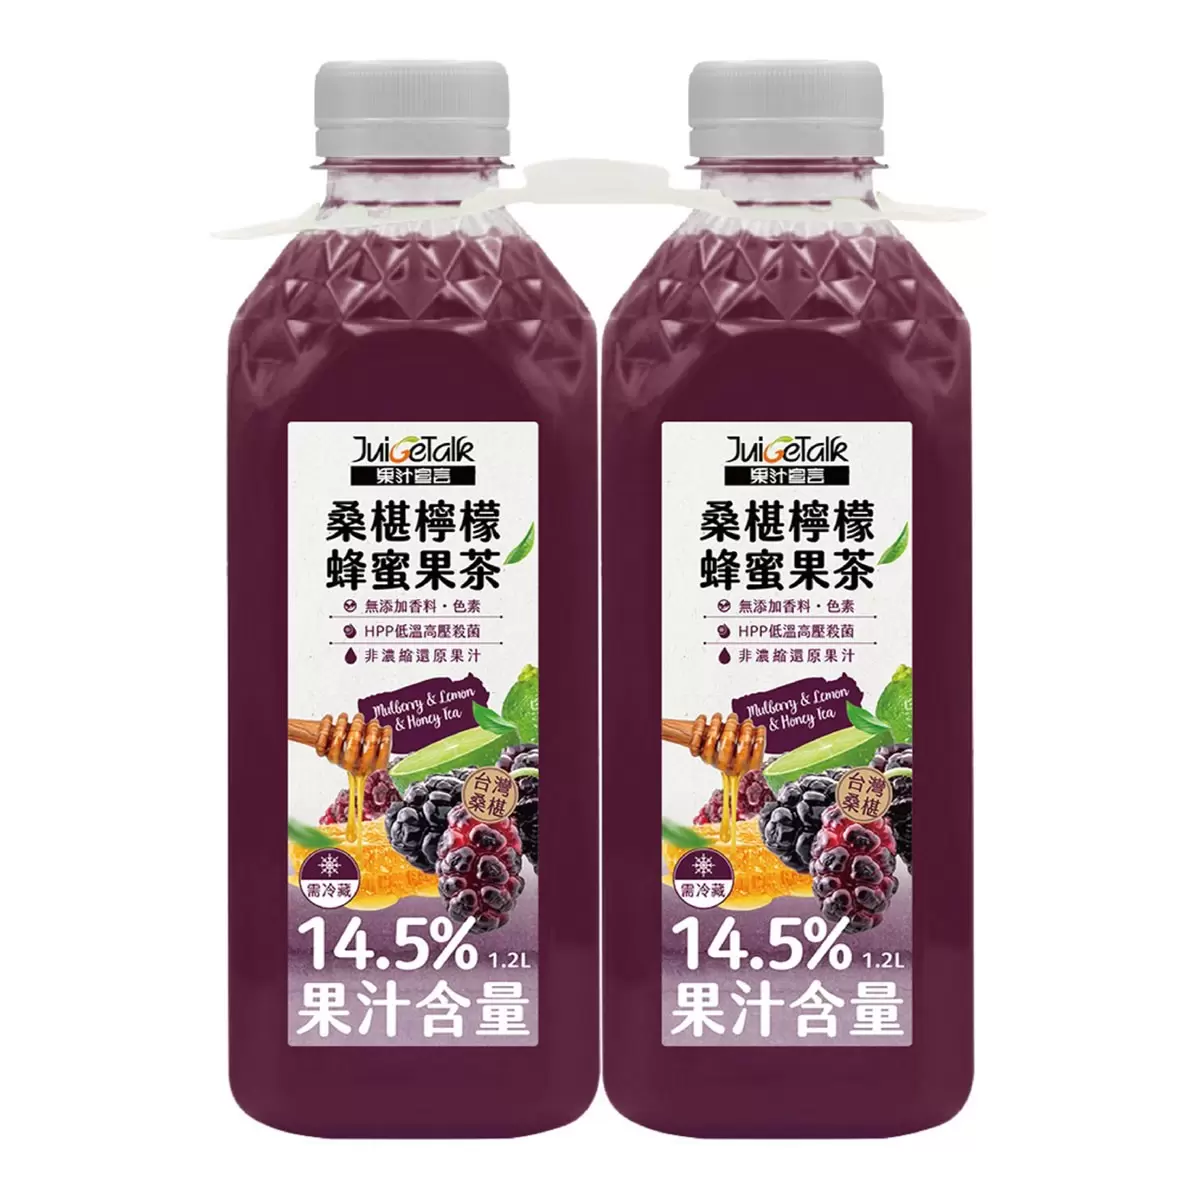 果汁宣言 桑椹檸檬蜂蜜果茶 1.2公升 X 2入